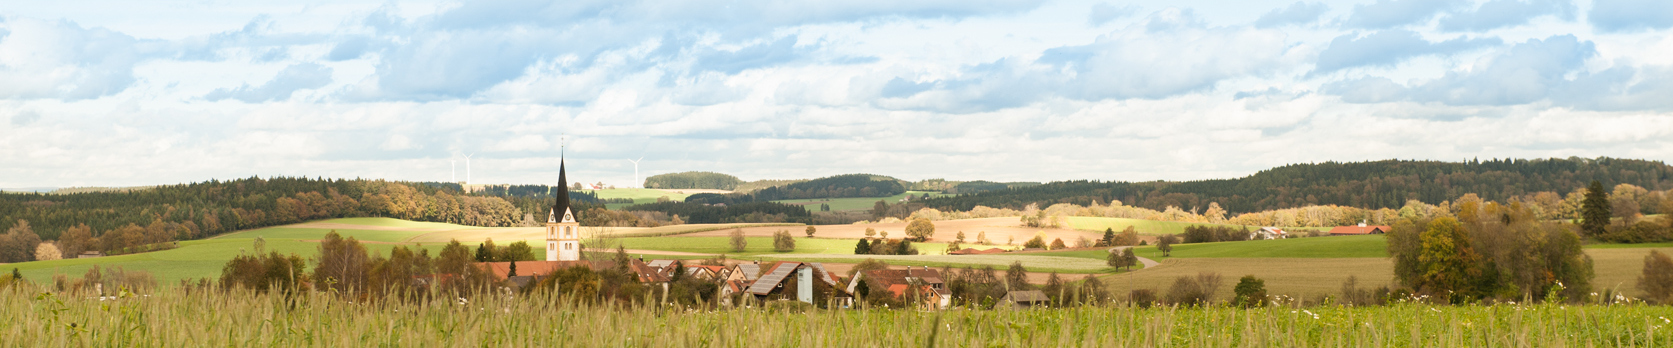 Hintergrundbild der Gemeinde Heiligenberg